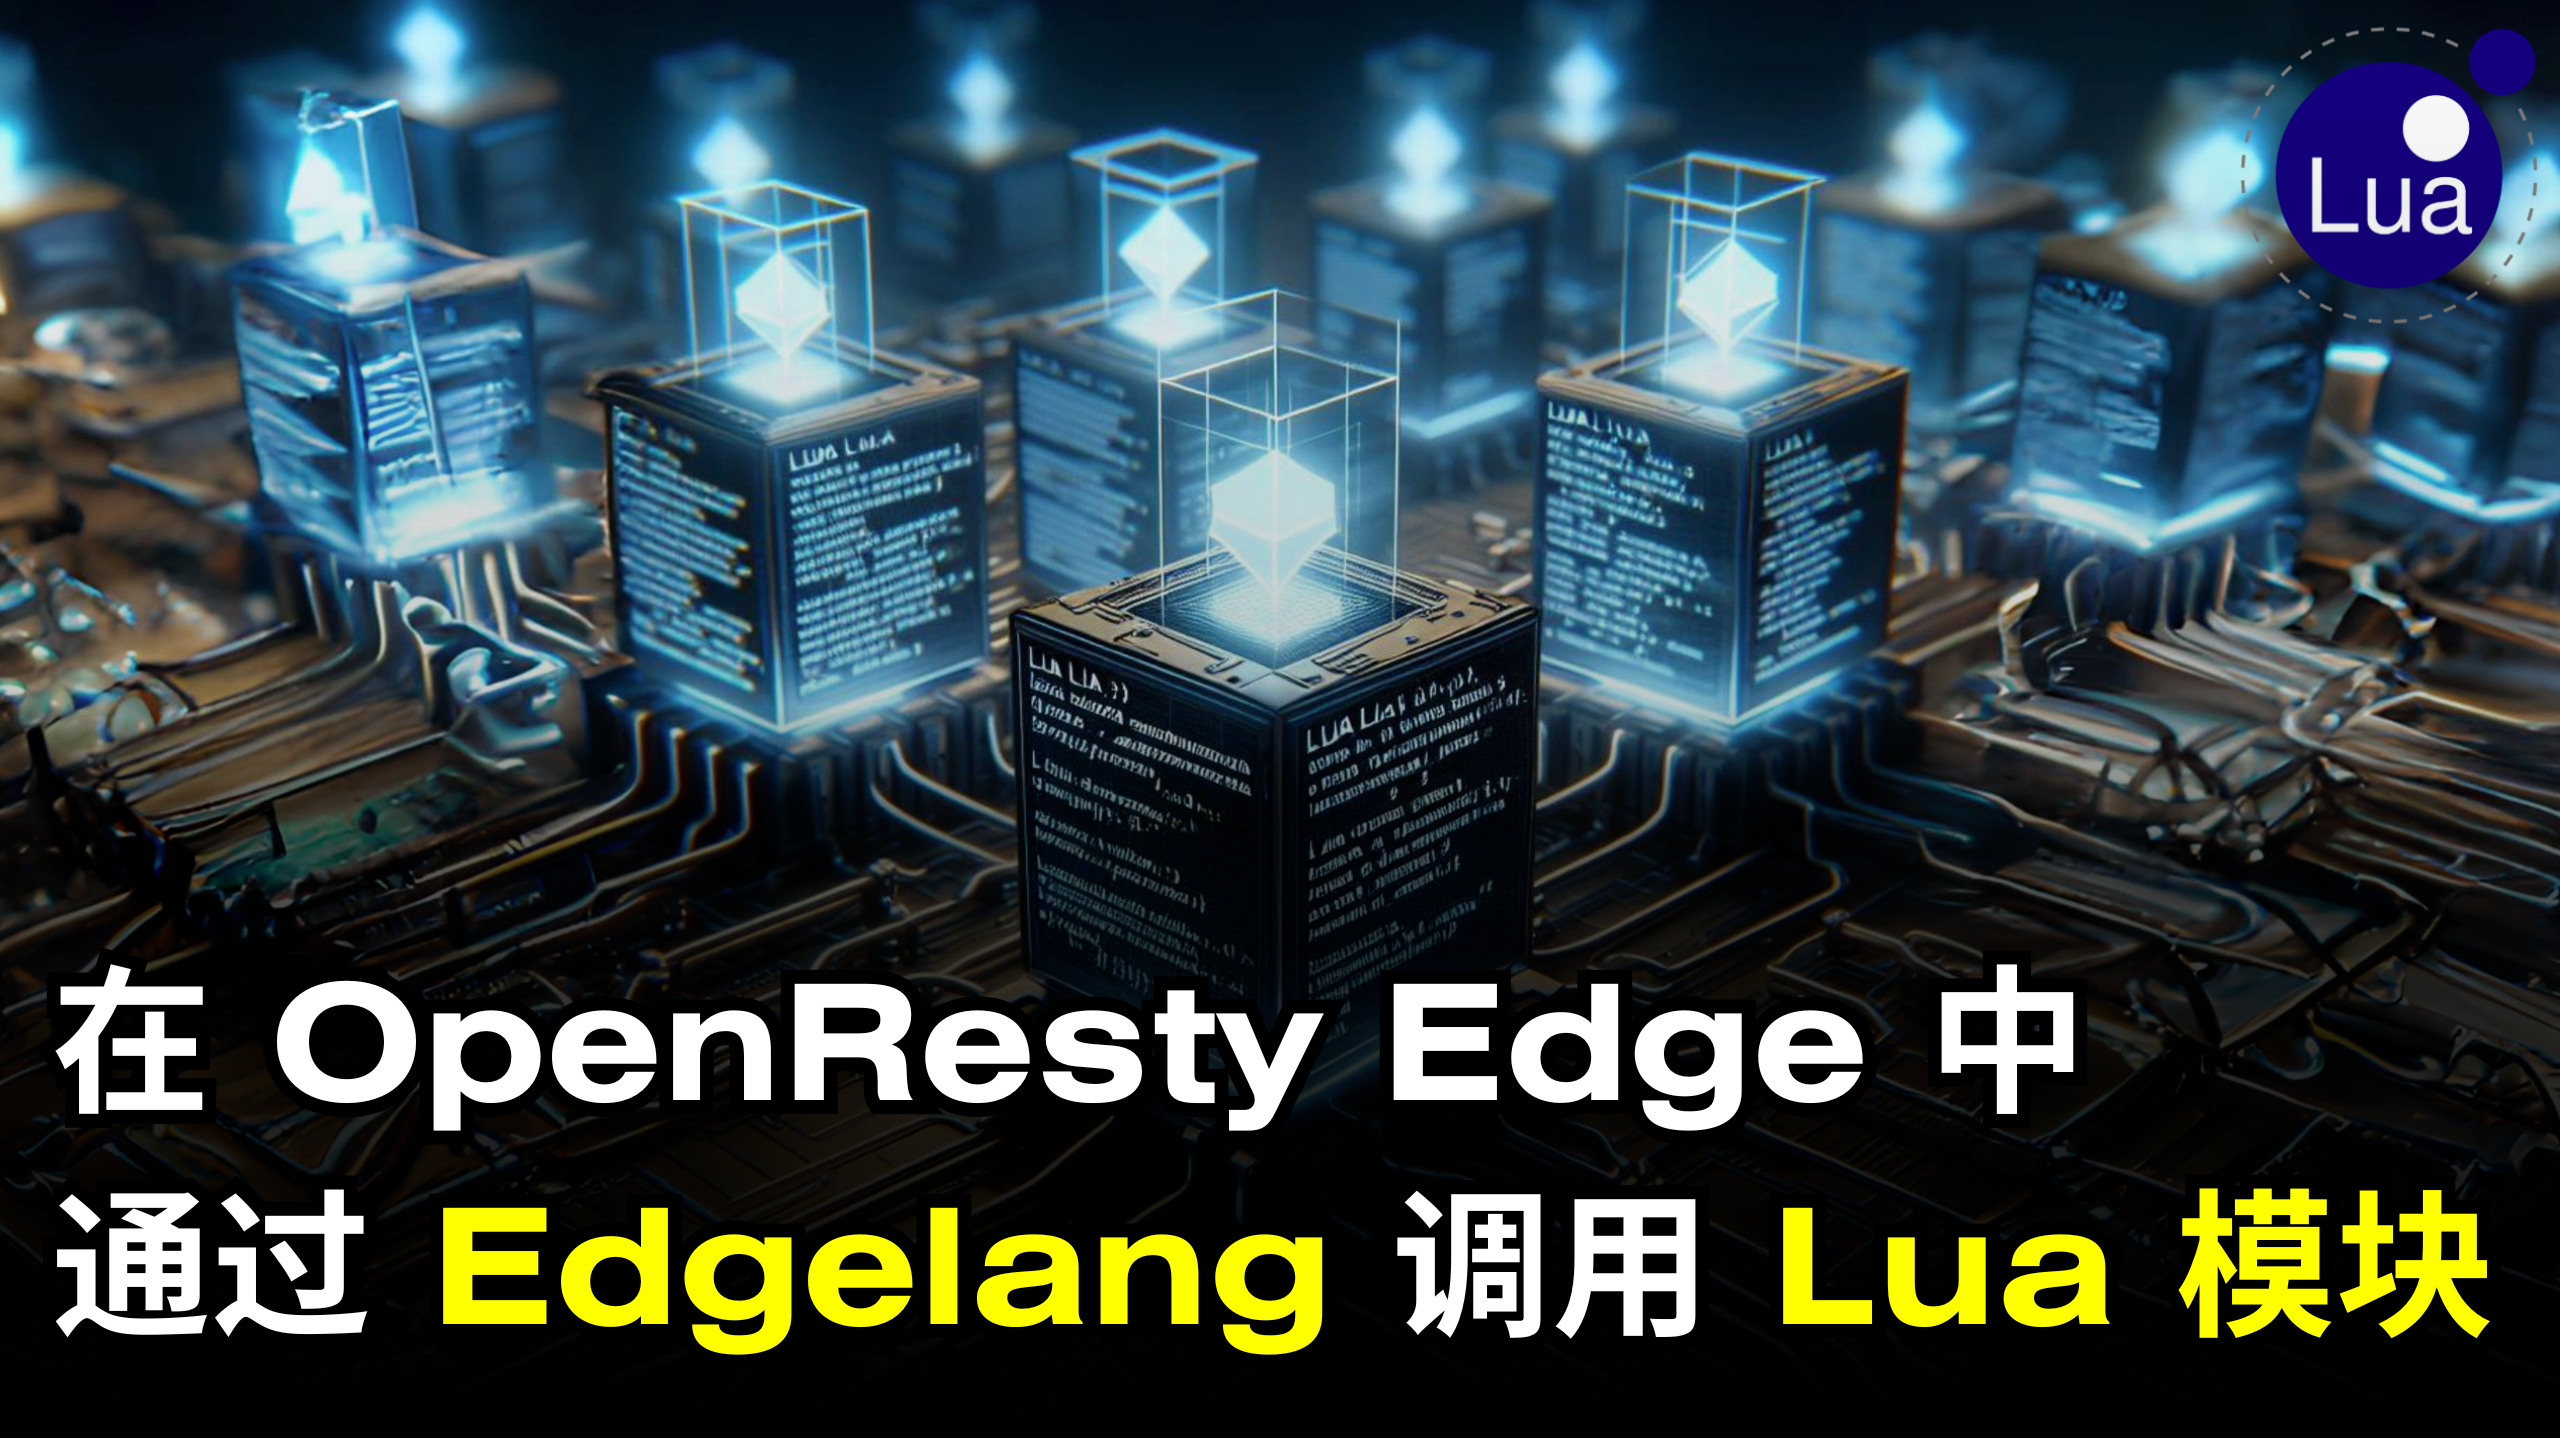 在 OpenResty Edge 中通过 Edgelang 调用 Lua 模块